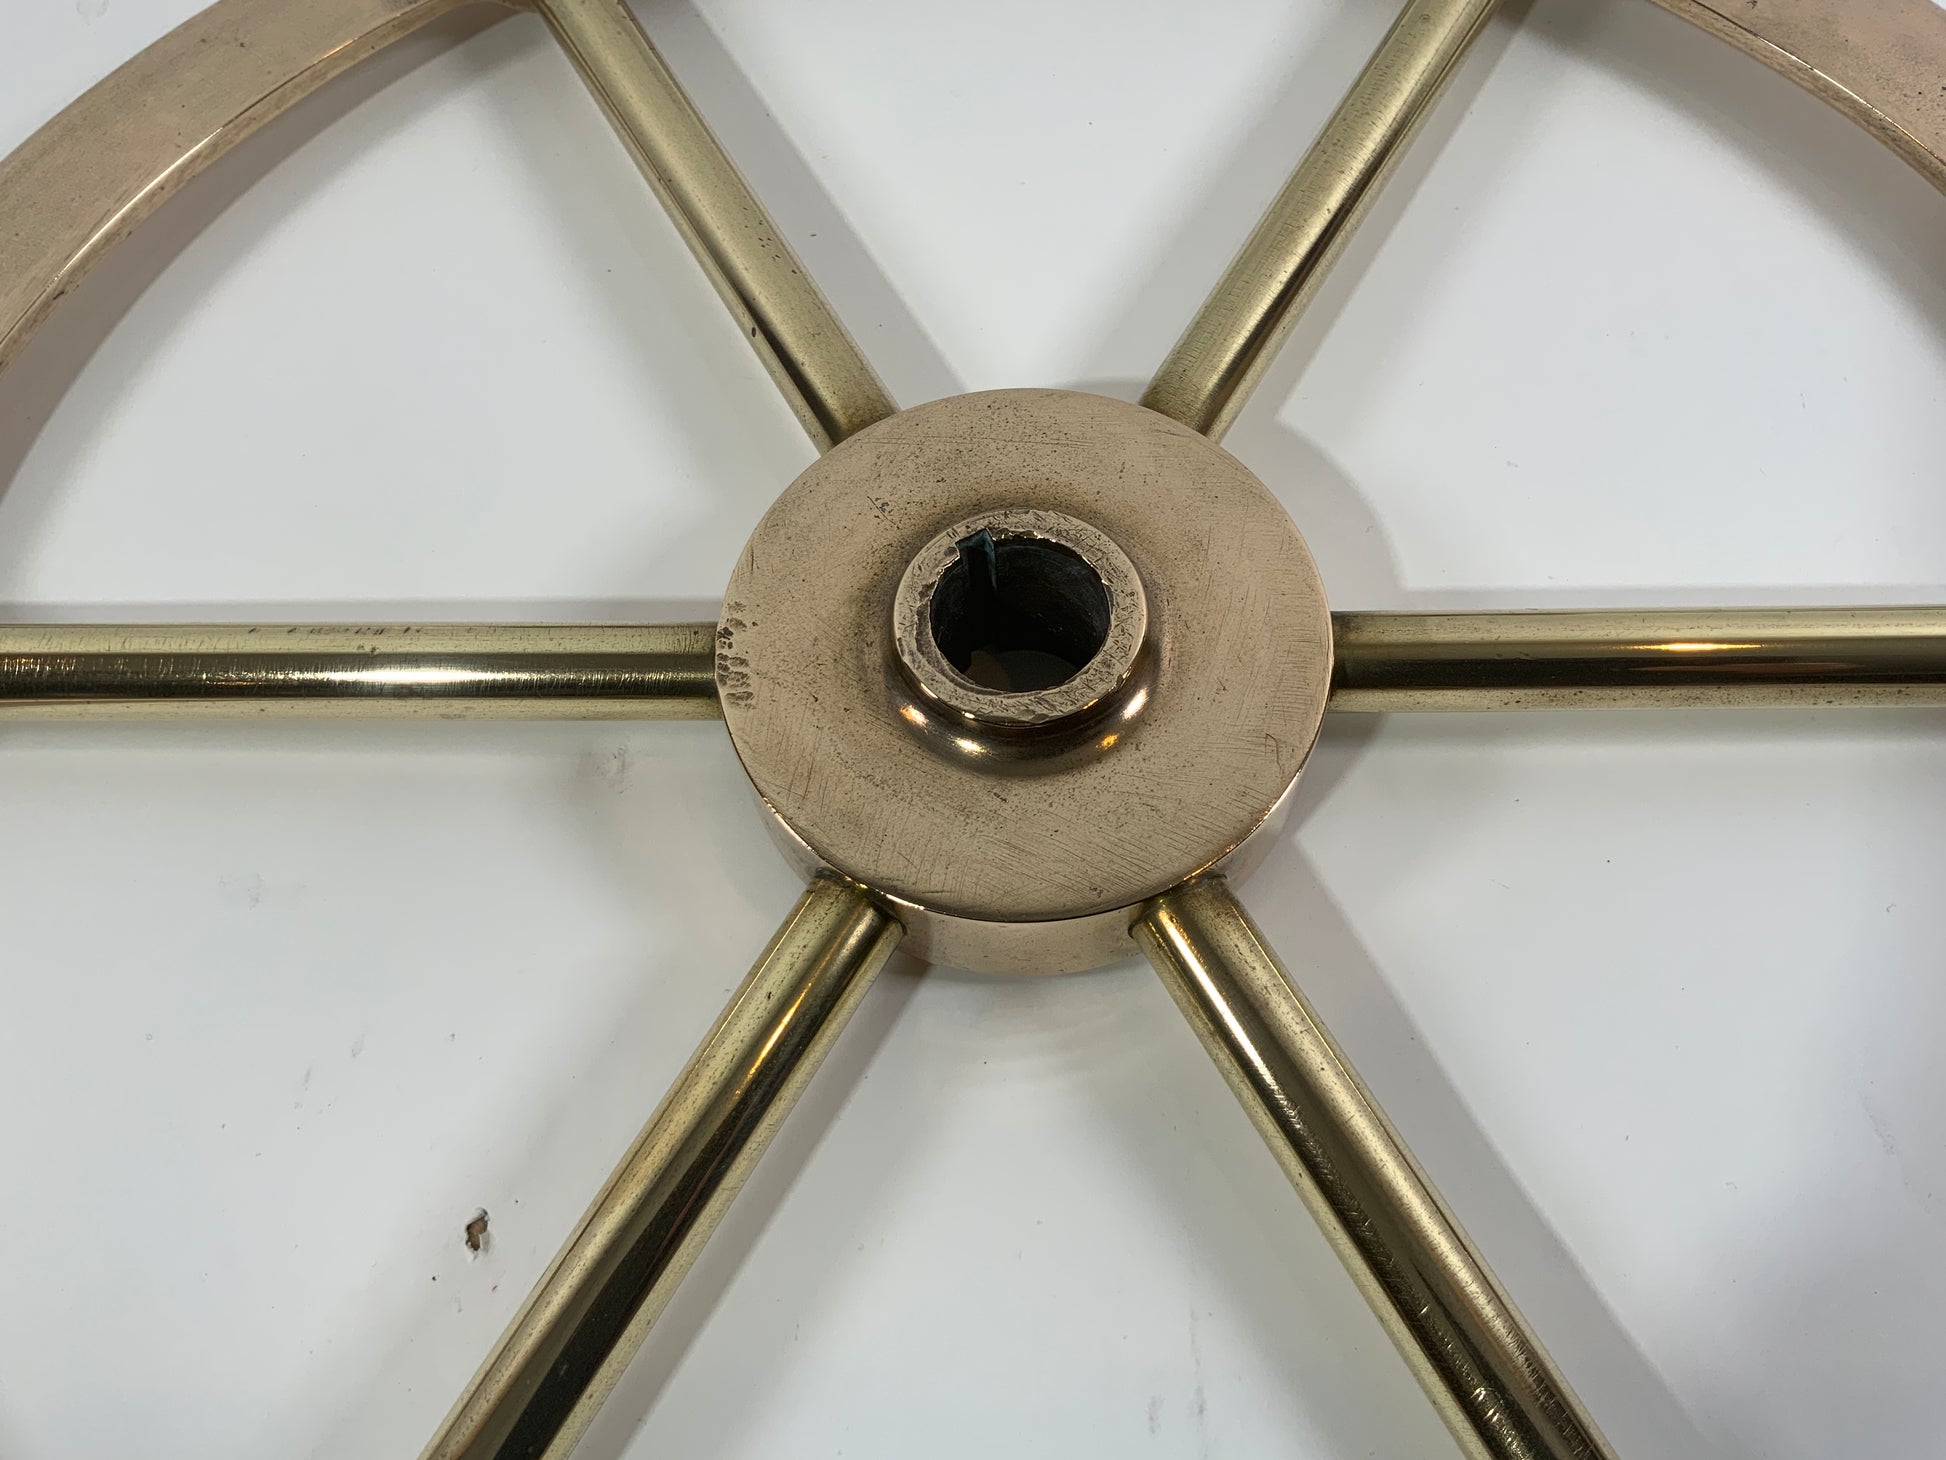 Six Spoke Solid Brass Yacht Wheel - Lannan Gallery